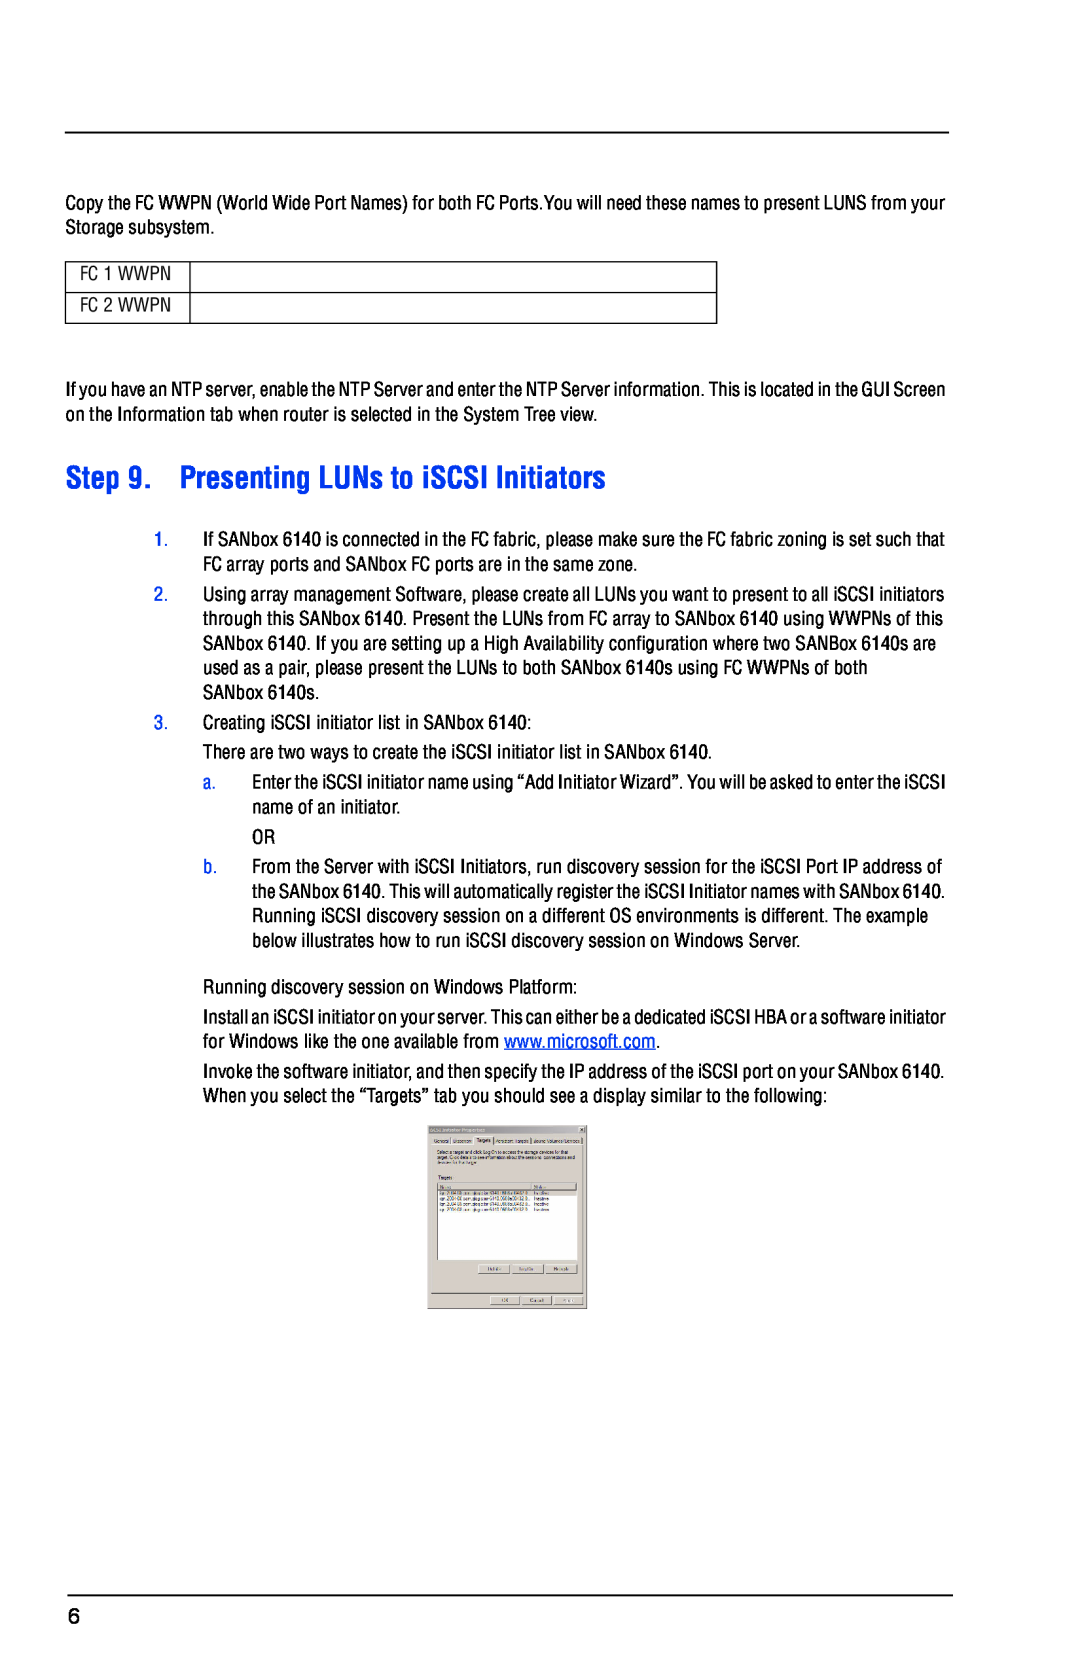 Q-Logic 6140 quick start Presenting LUNs to iSCSI Initiators 